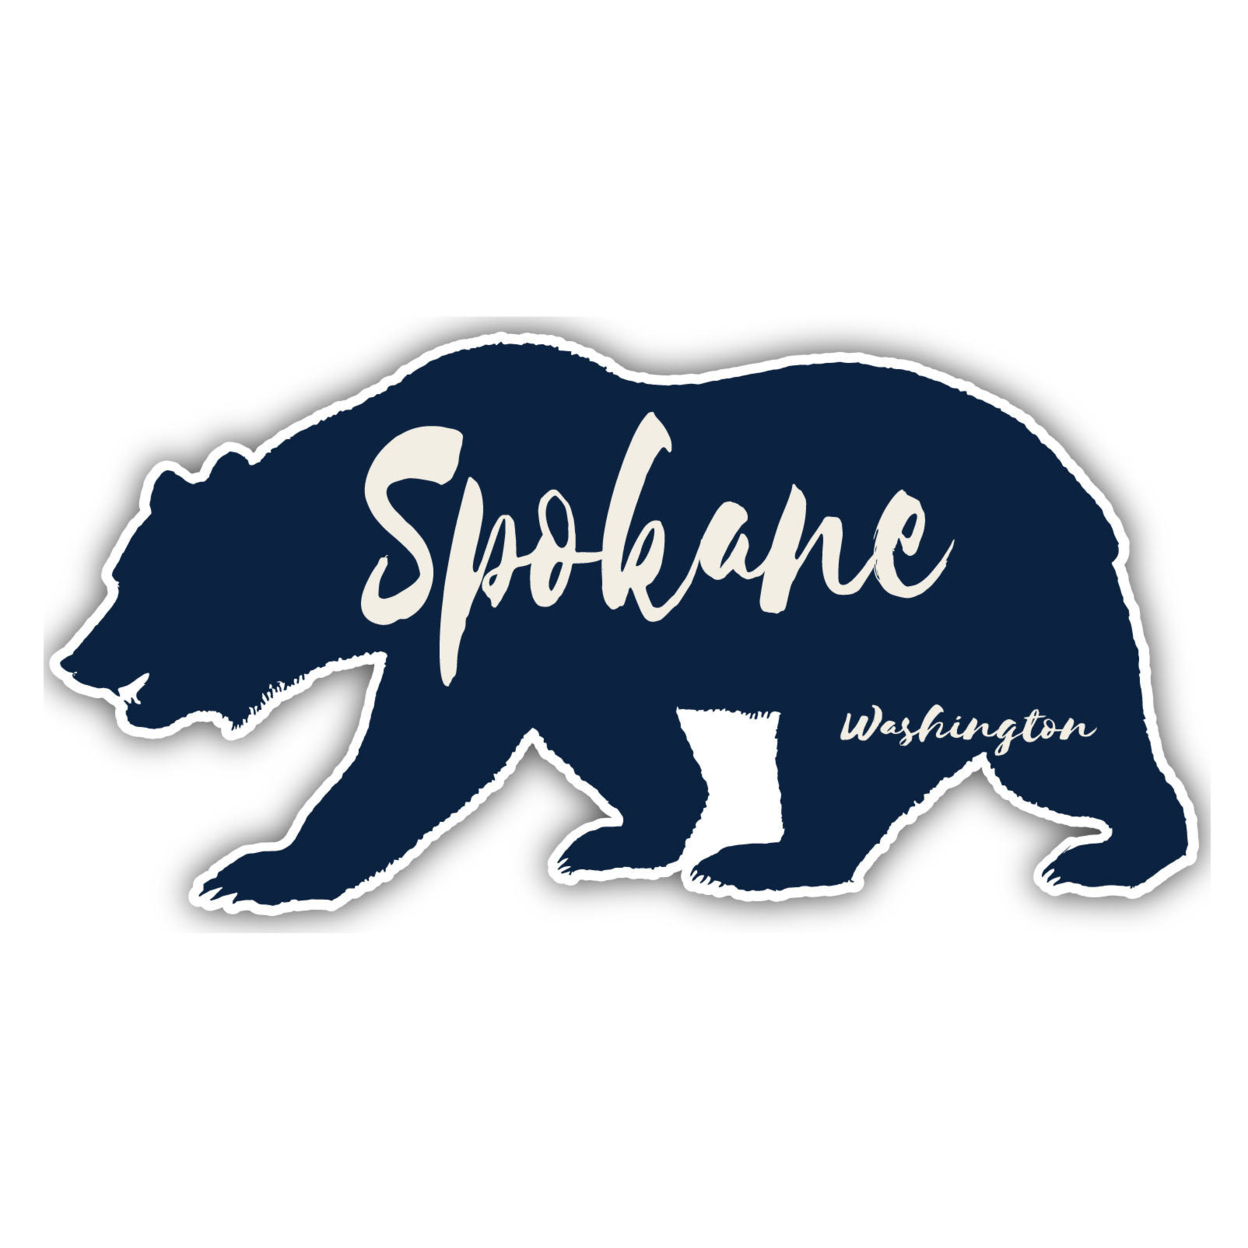 Spokane Washington Souvenir Decorative Stickers (Choose Theme And Size) - Single Unit, 2-Inch, Bear